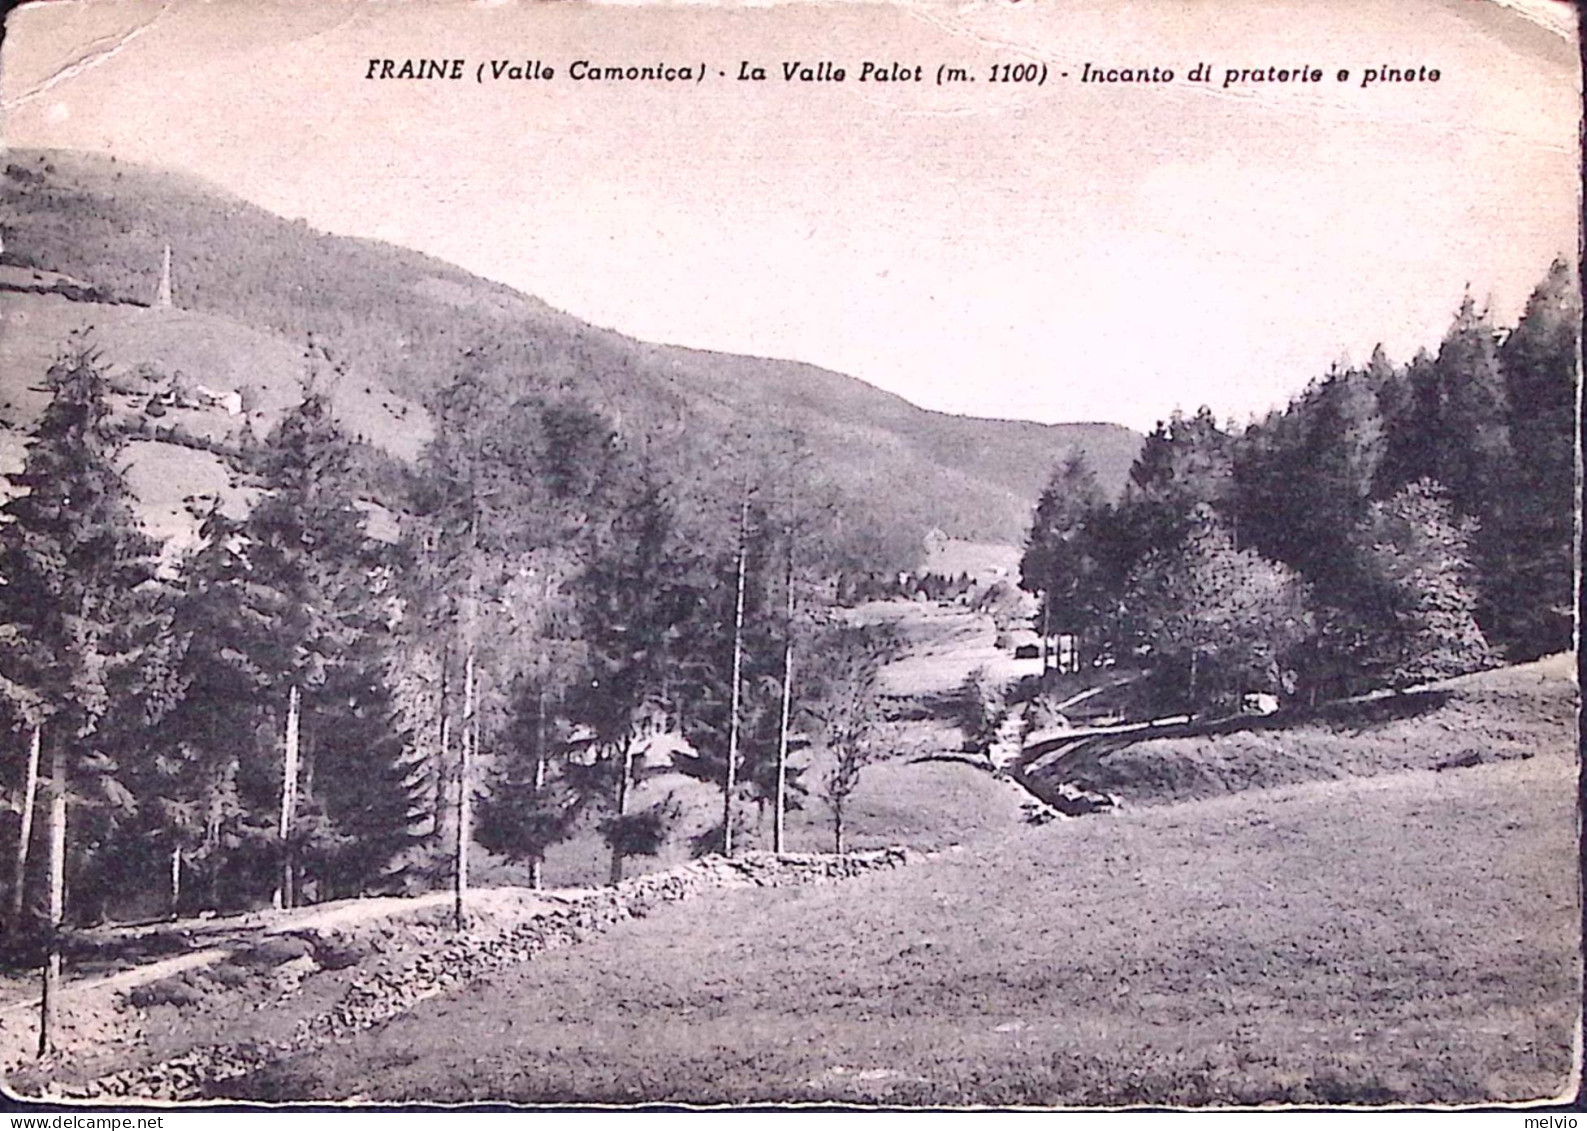 1950circa-FRAINE Valle Camonica La Valle Palot, Nuova - Brescia